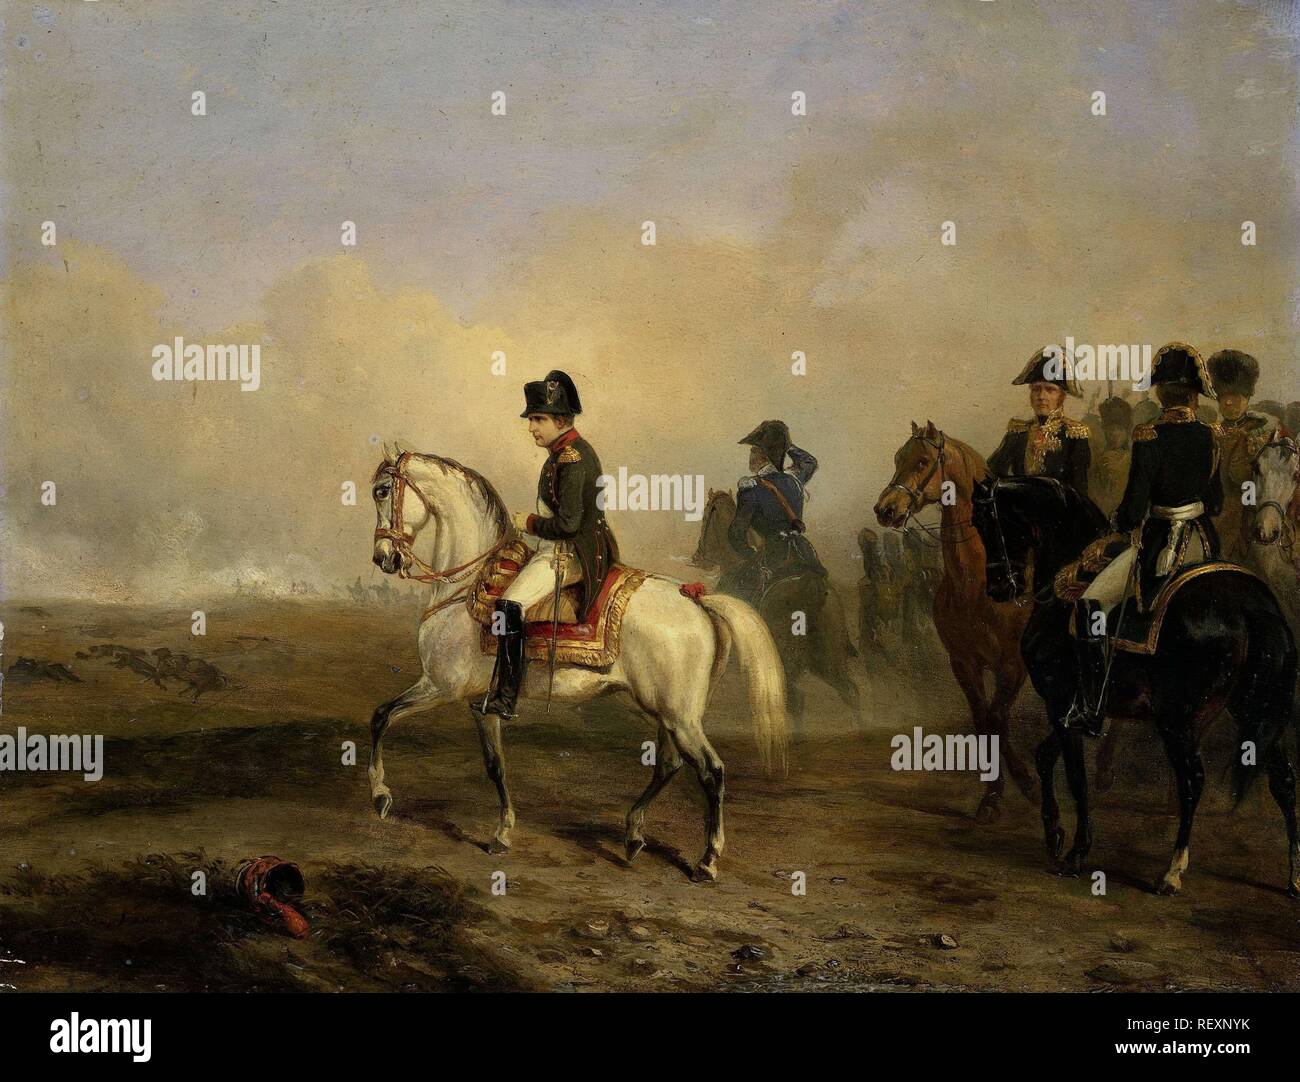 Kaiser Napoleon I. und seine Mitarbeiter auf dem Pferd. Datierung: 1810 - 1850. Maße: H 30,7 cm x W 39,8 cm x T 1,0 cm, d 7,7 cm. Museum: Rijksmuseum, Amsterdam. Autor: Horace Vernet. Stockfoto